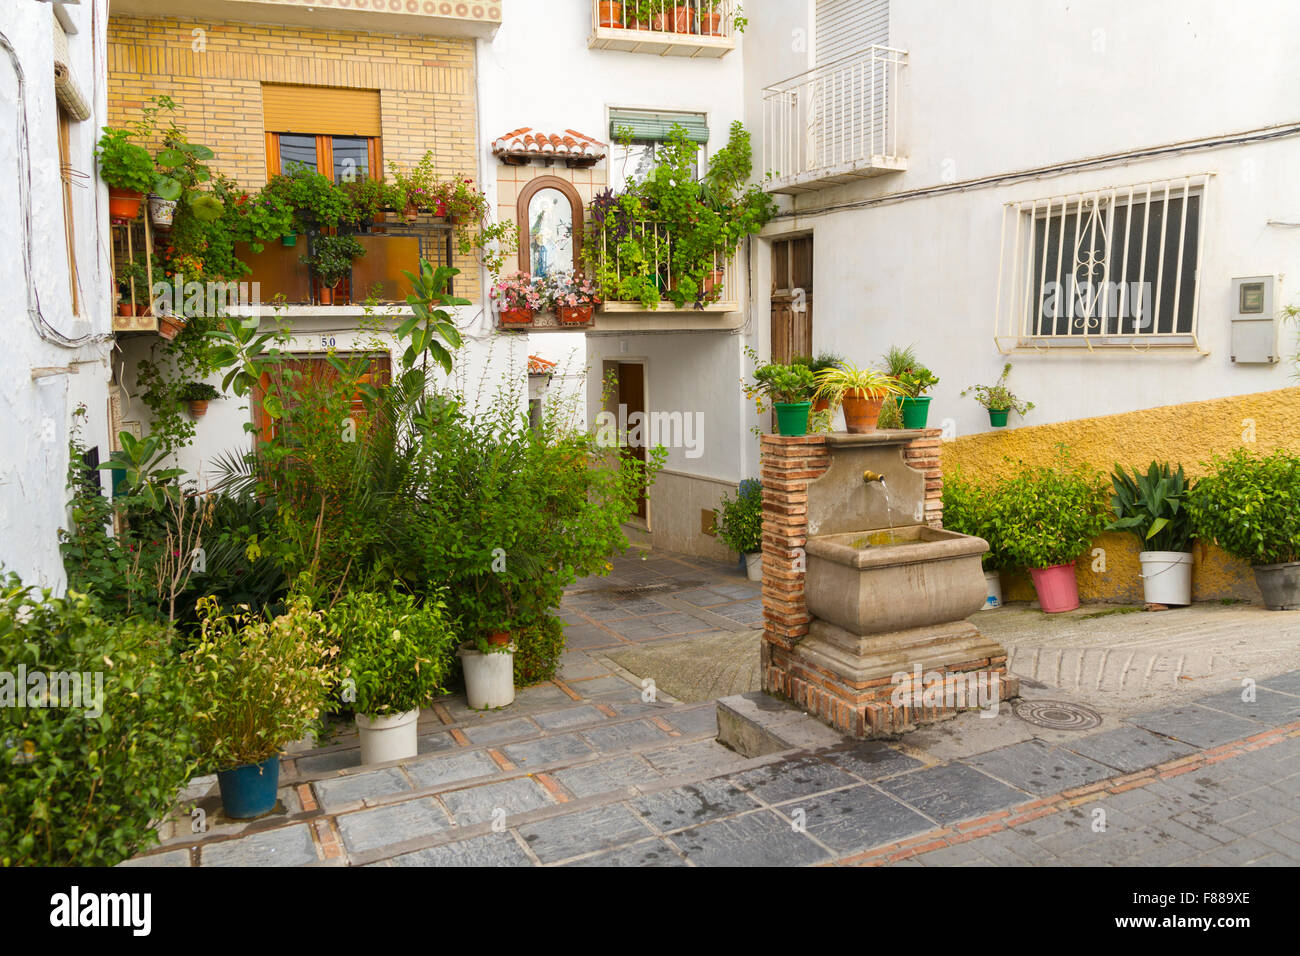 Il piccolo villaggio spagnolo di Lanjaron, che è famosa per le sue acque sorgive con gli spagnoli in visita a bere l'acqua che si ipotizza di cure Foto Stock